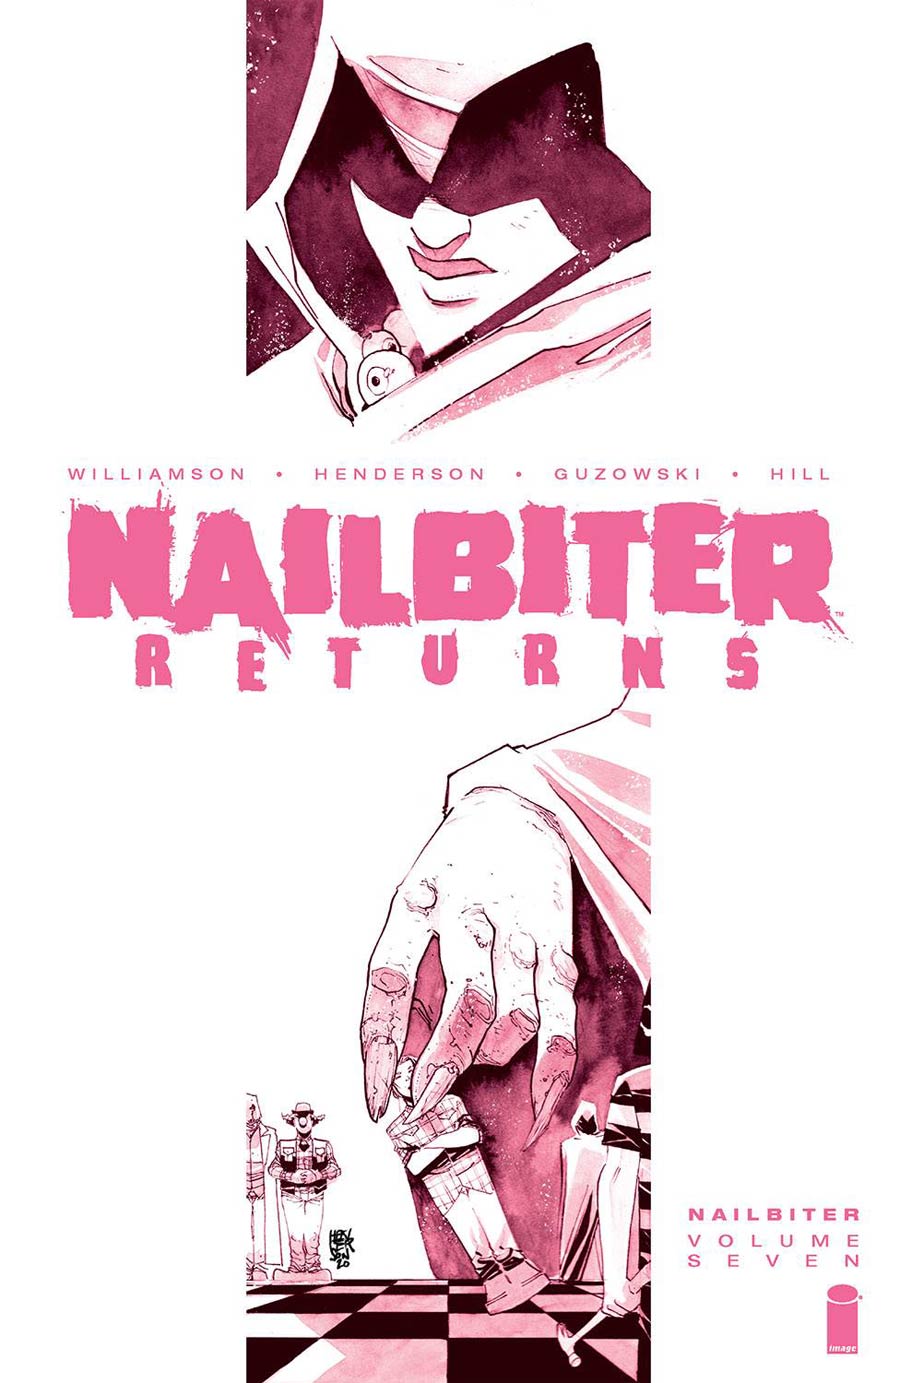 Nailbiter Vol 7 Nailbiter Returns TP